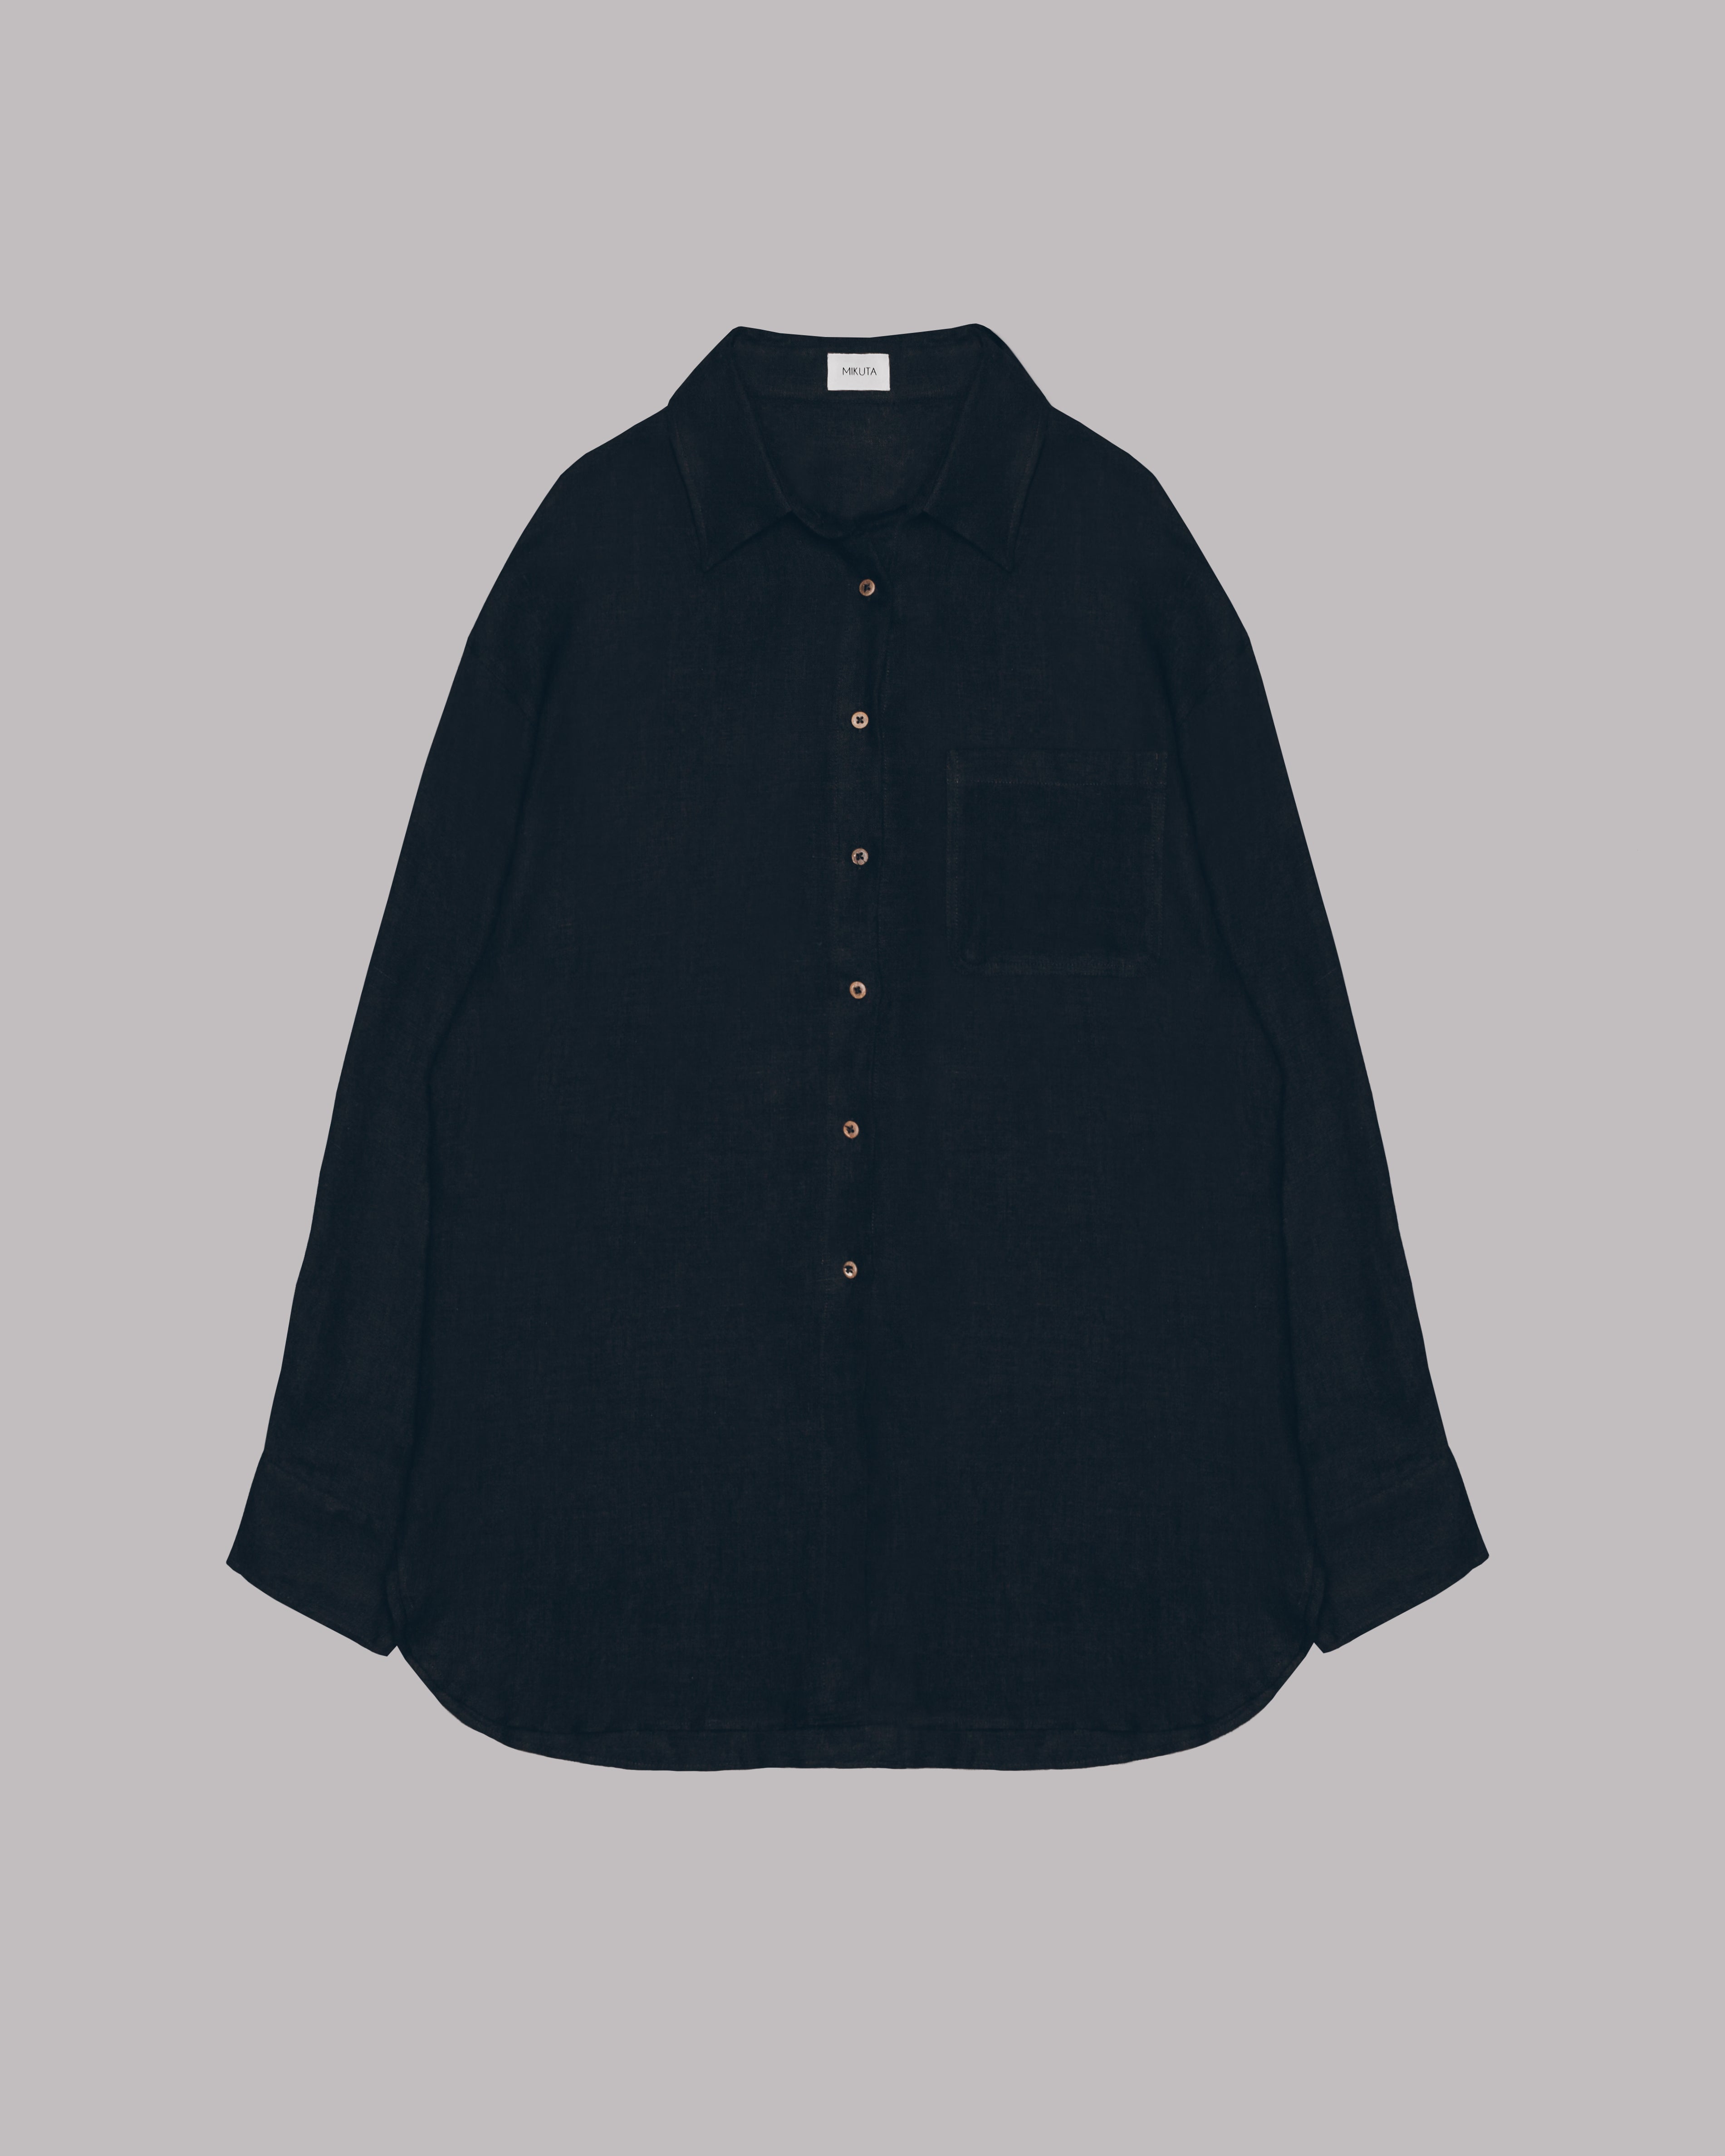 The Black Linen Shirt